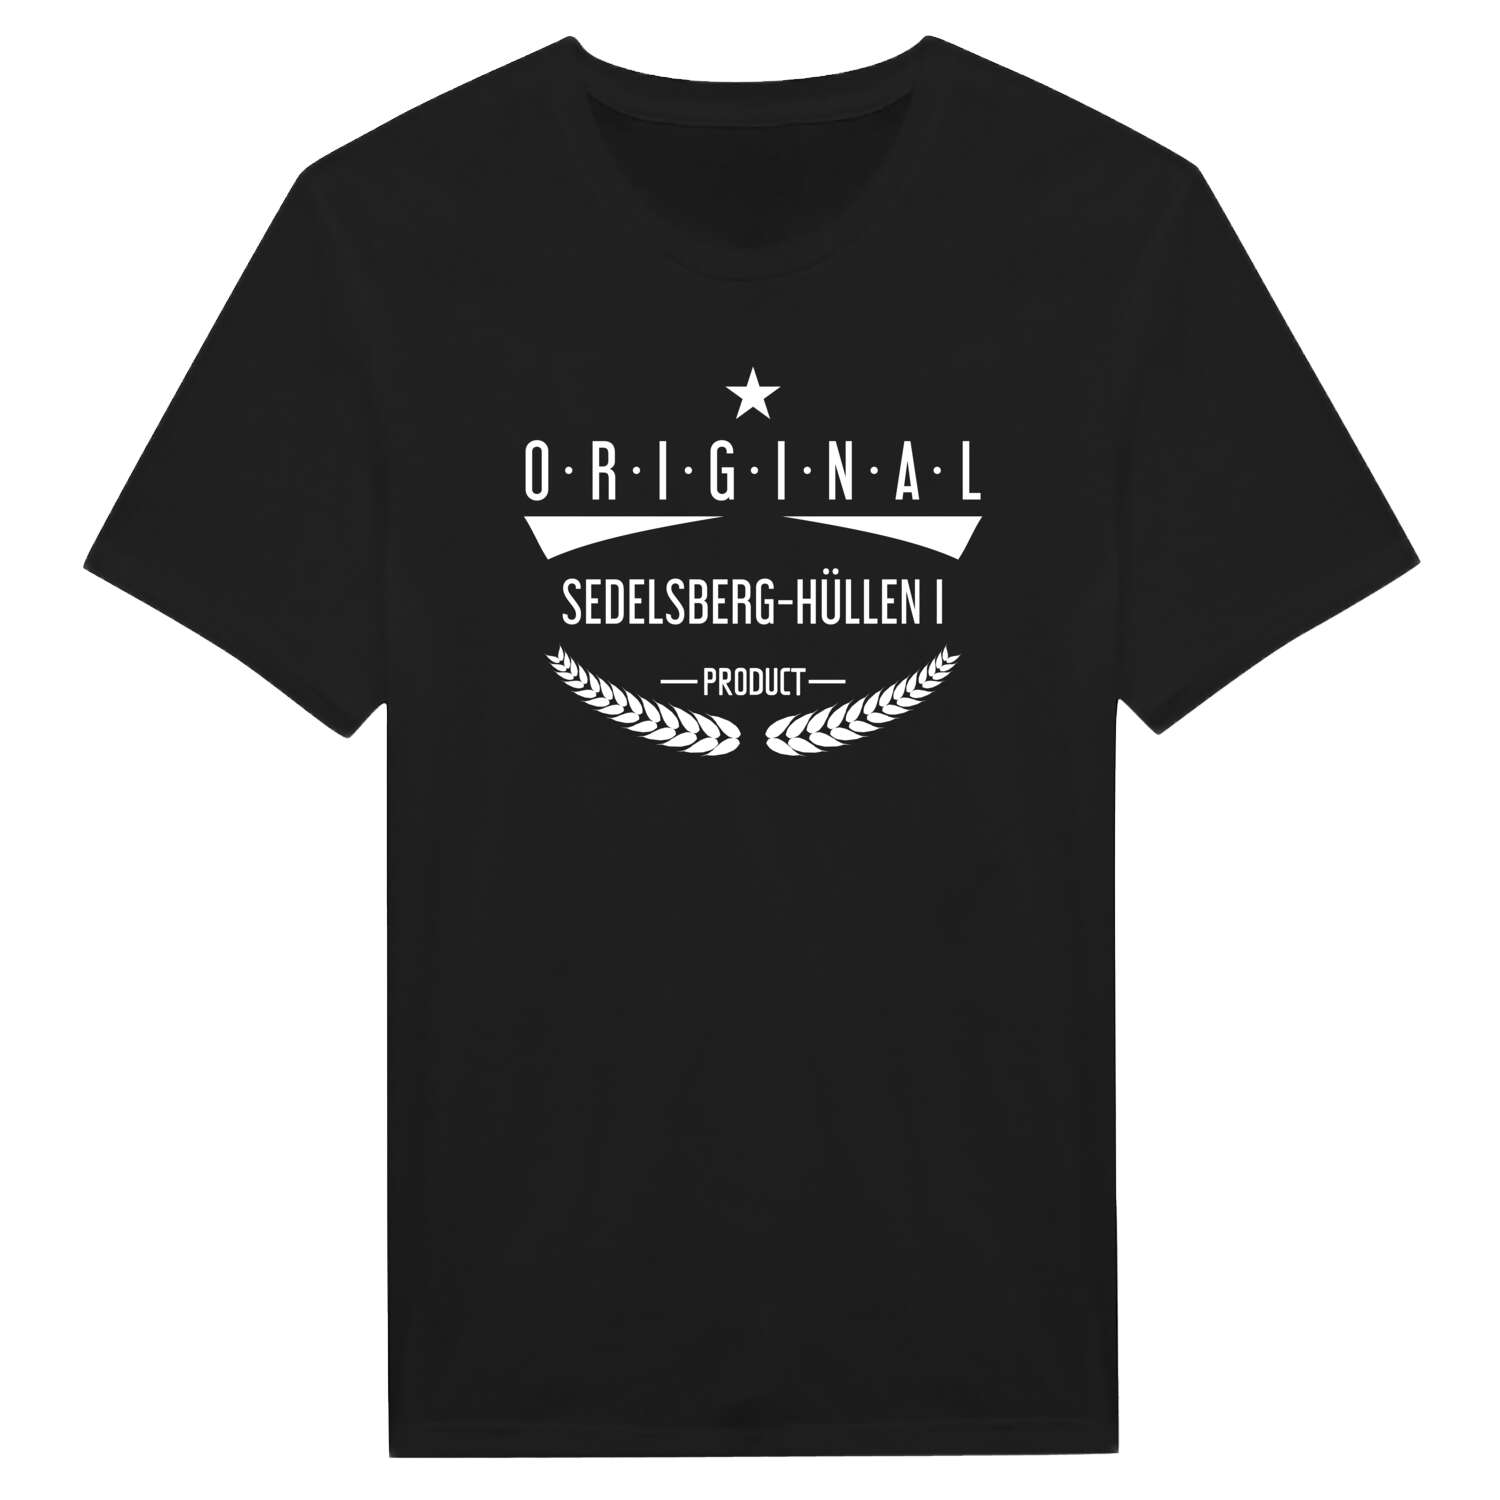 Sedelsberg-Hüllen I T-Shirt »Original Product«